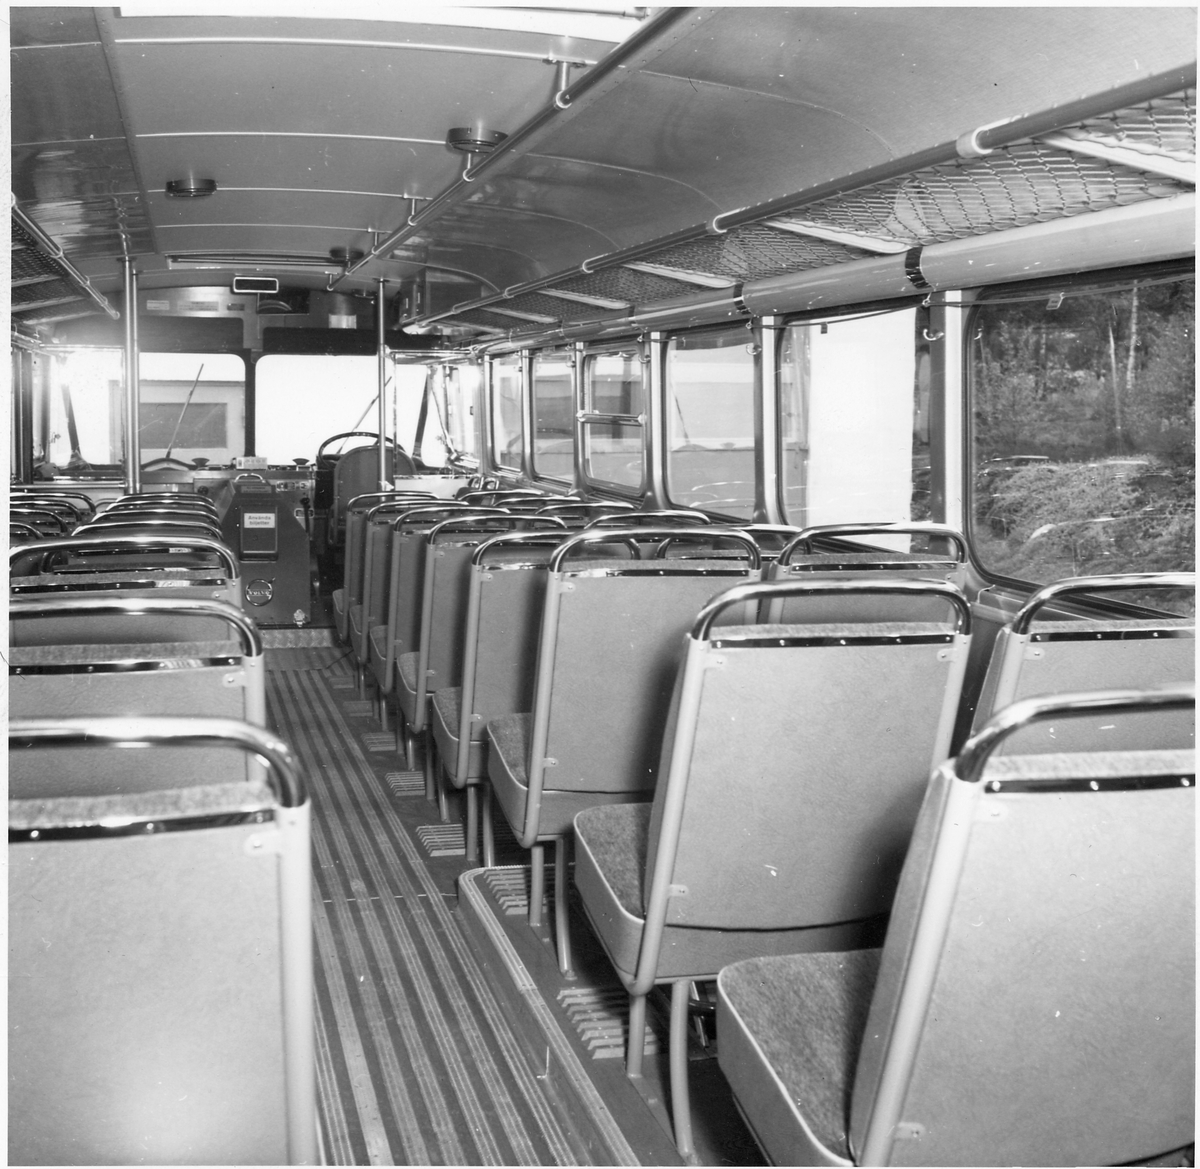 Sittplatser i en buss.